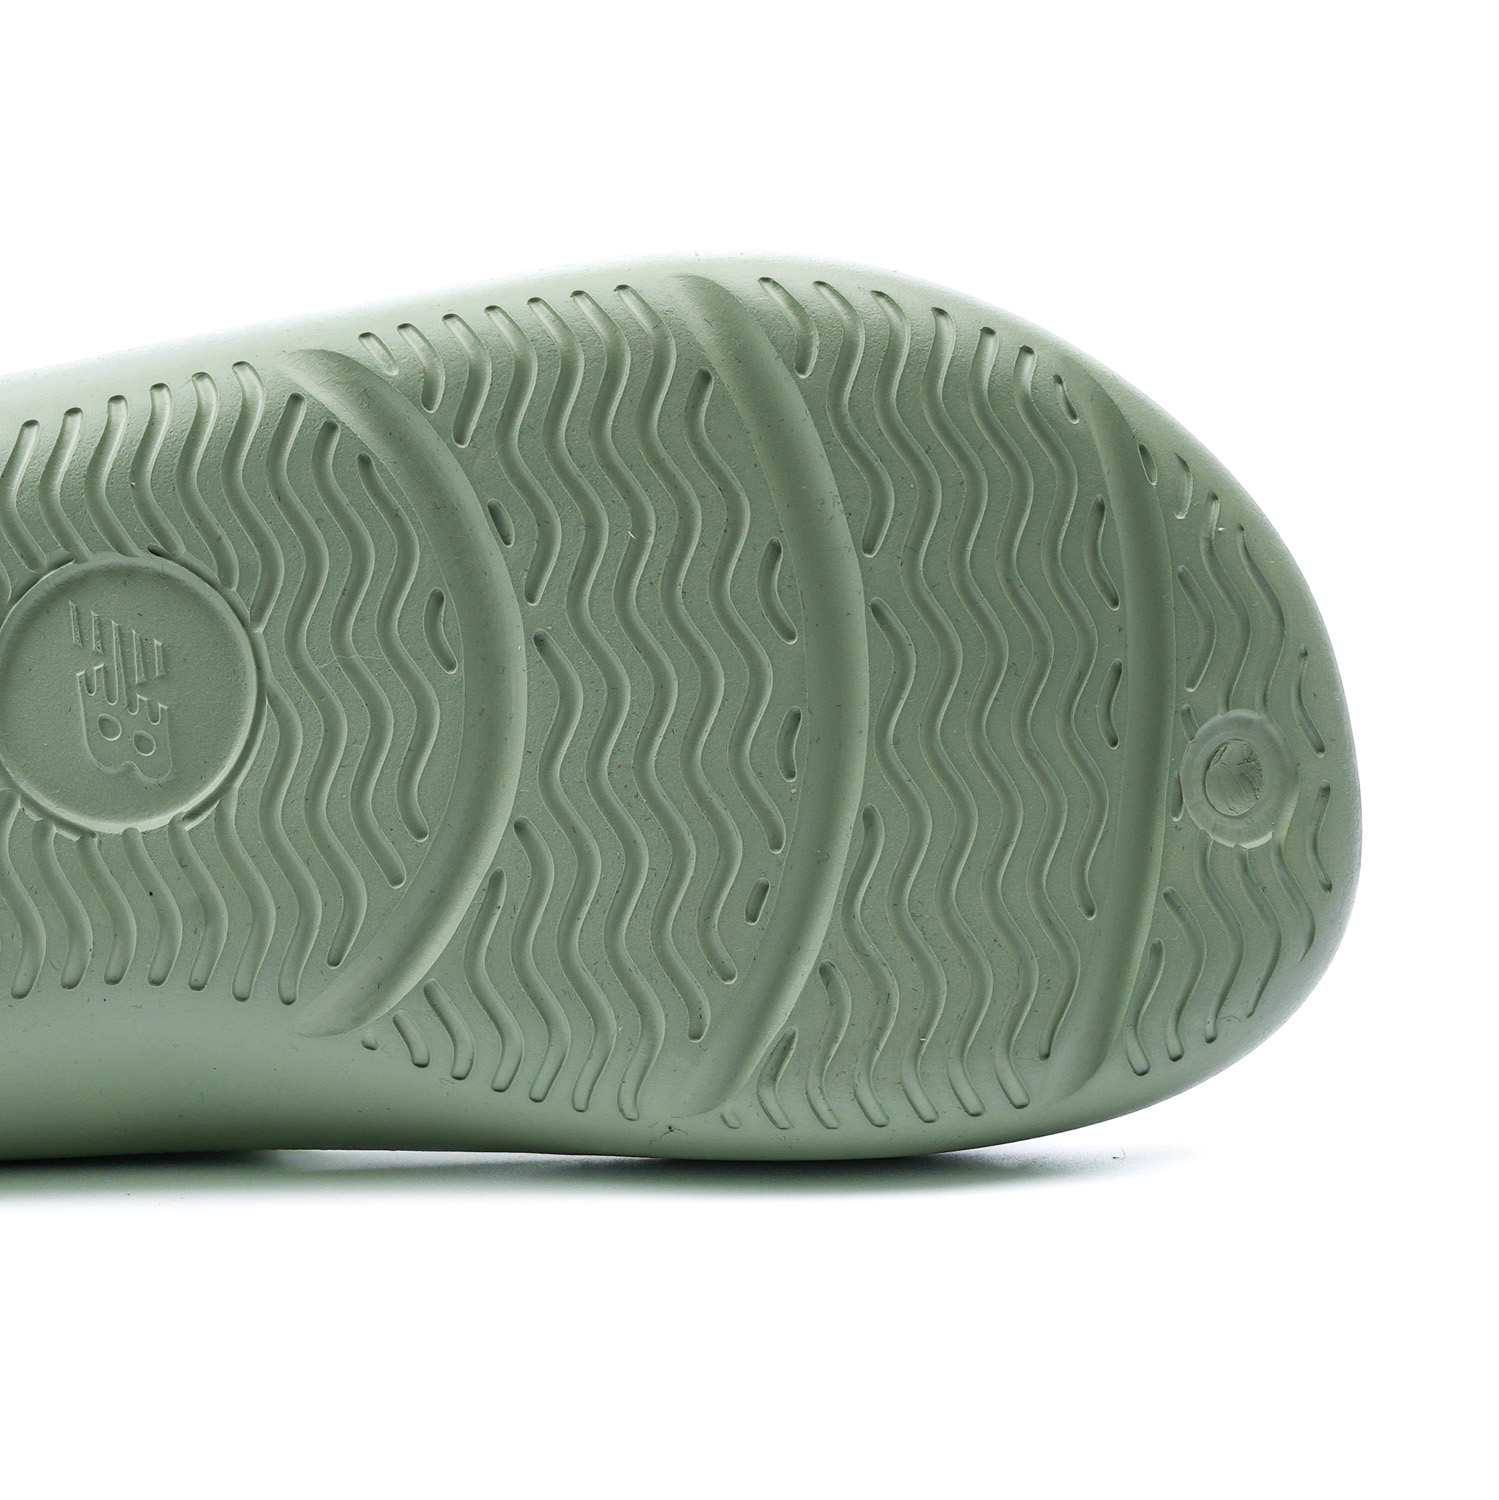 Taw & Toe x New Balance 5601 series Slides Green